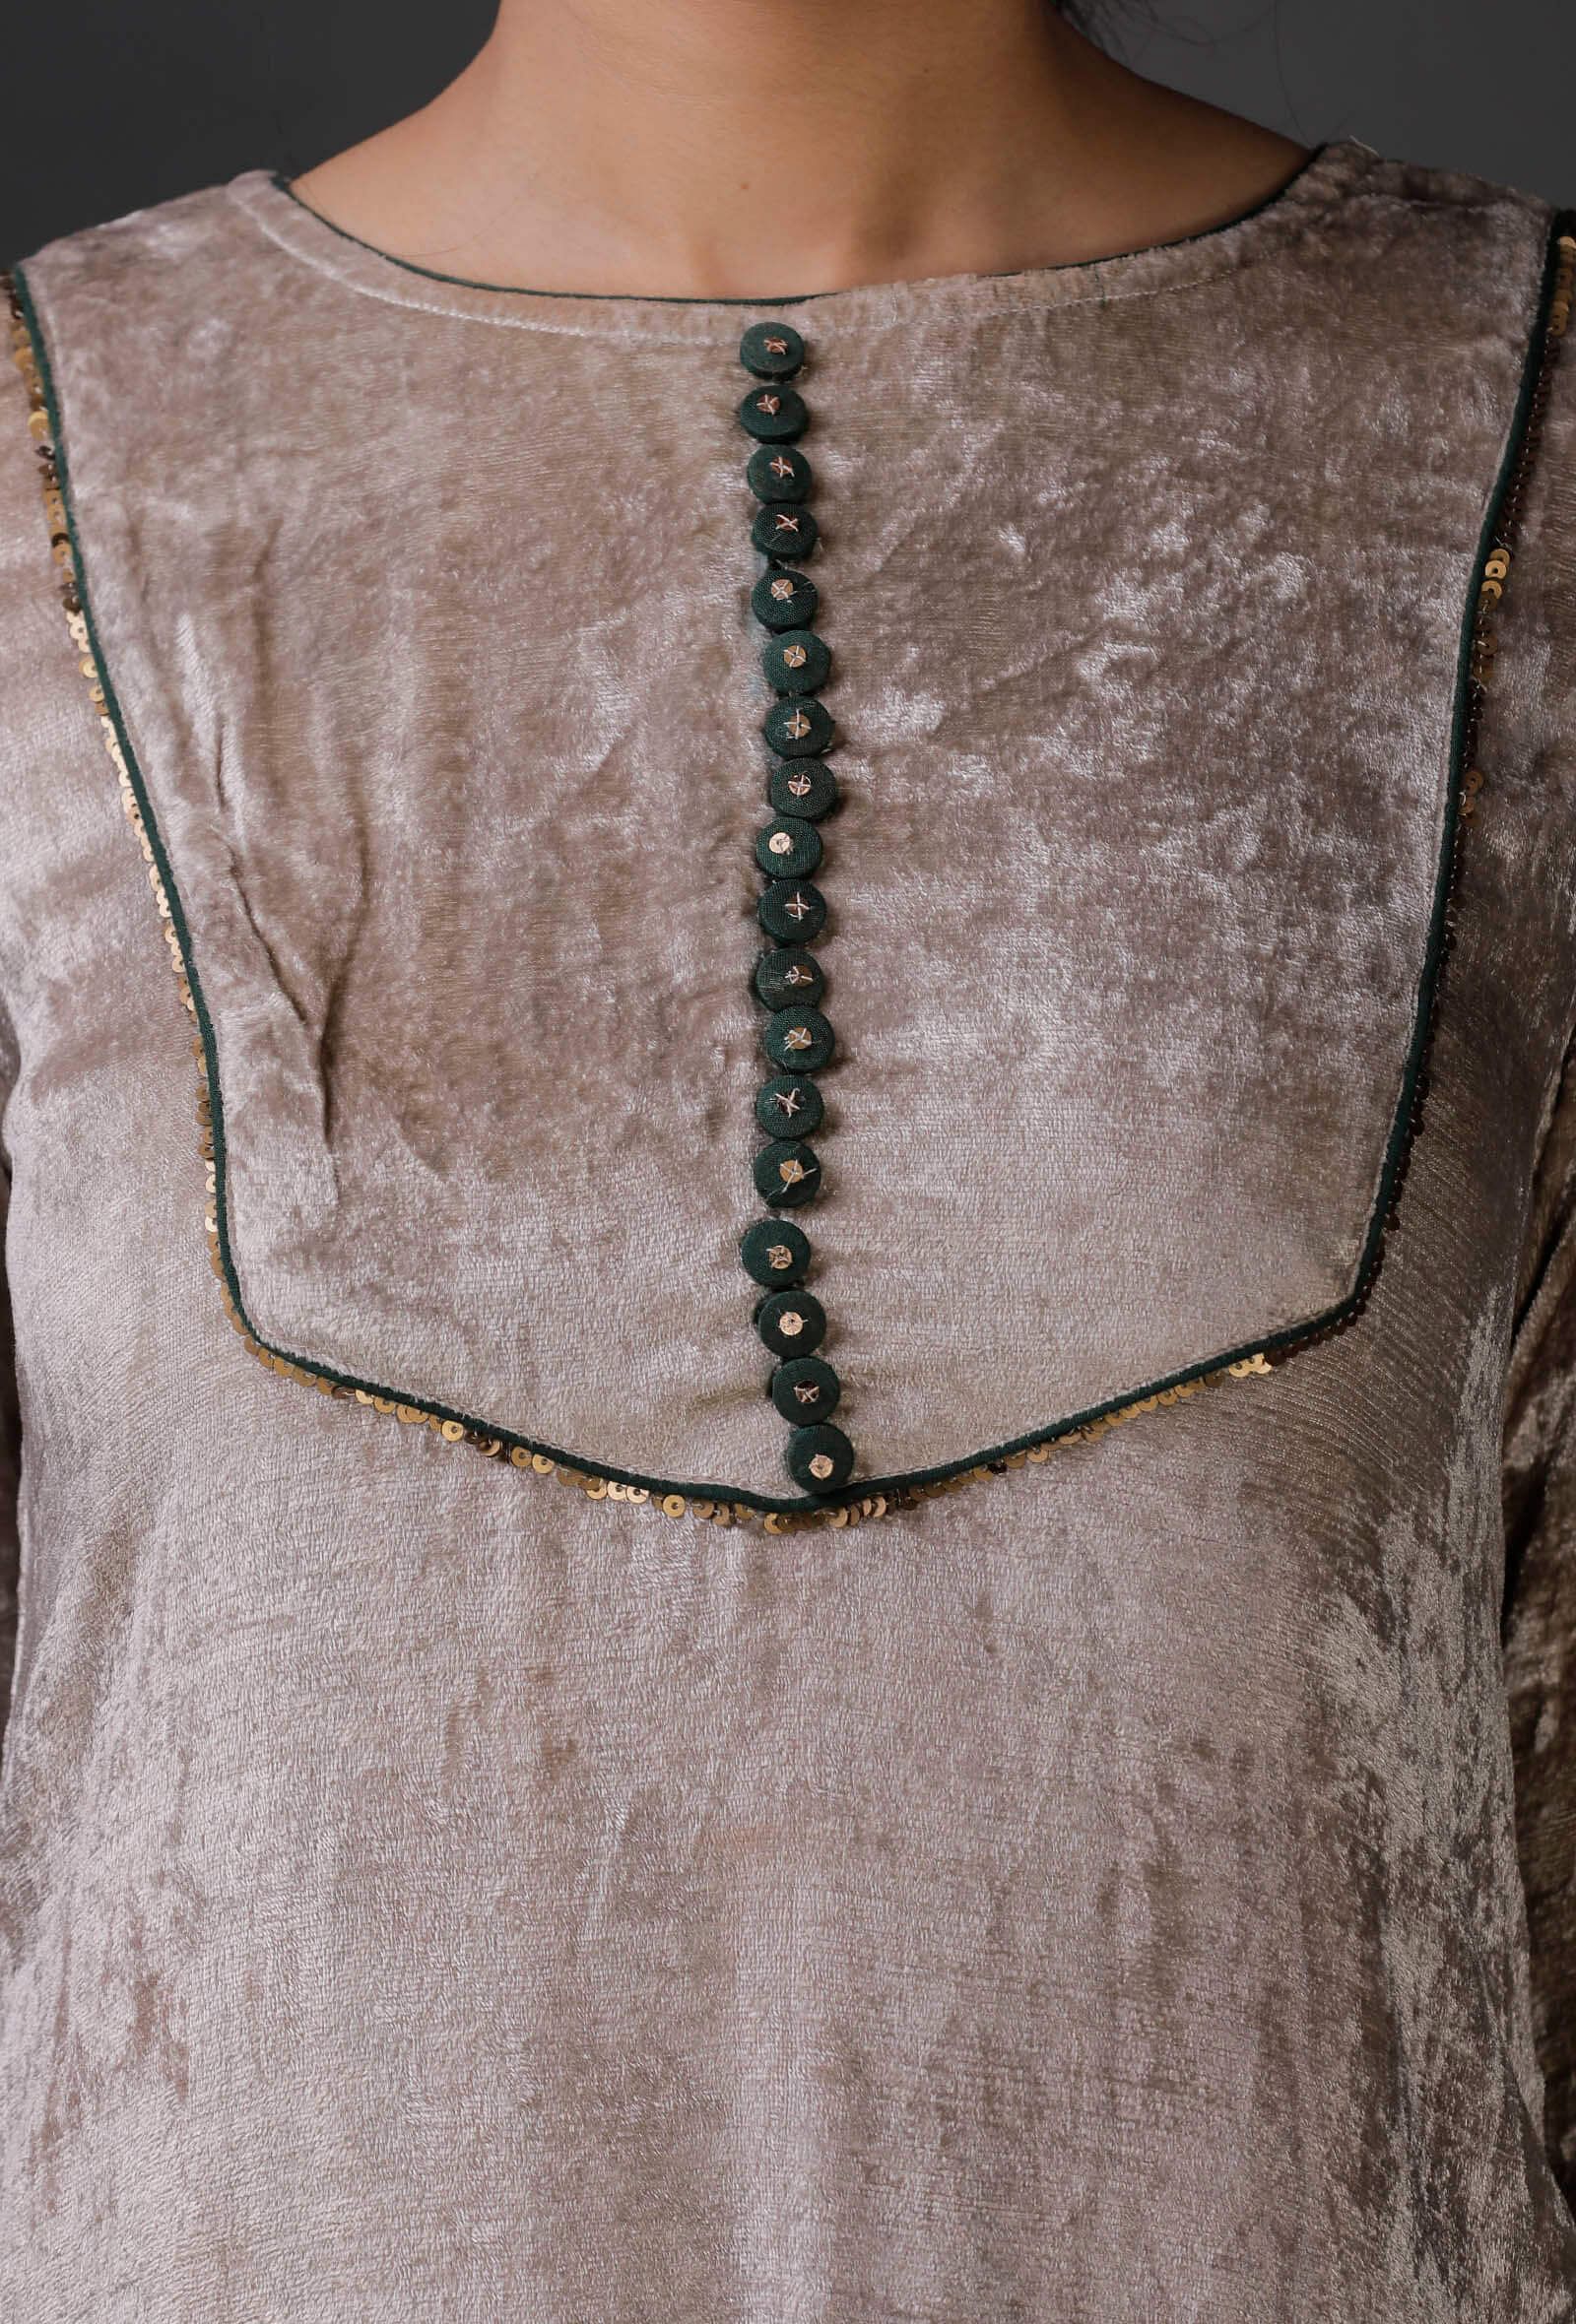 Velvet Kurti Design Ideas | Velvet gown Designs | Velvet Dress Designs |  Desain rok, Desain kurti, Gaun sederhana